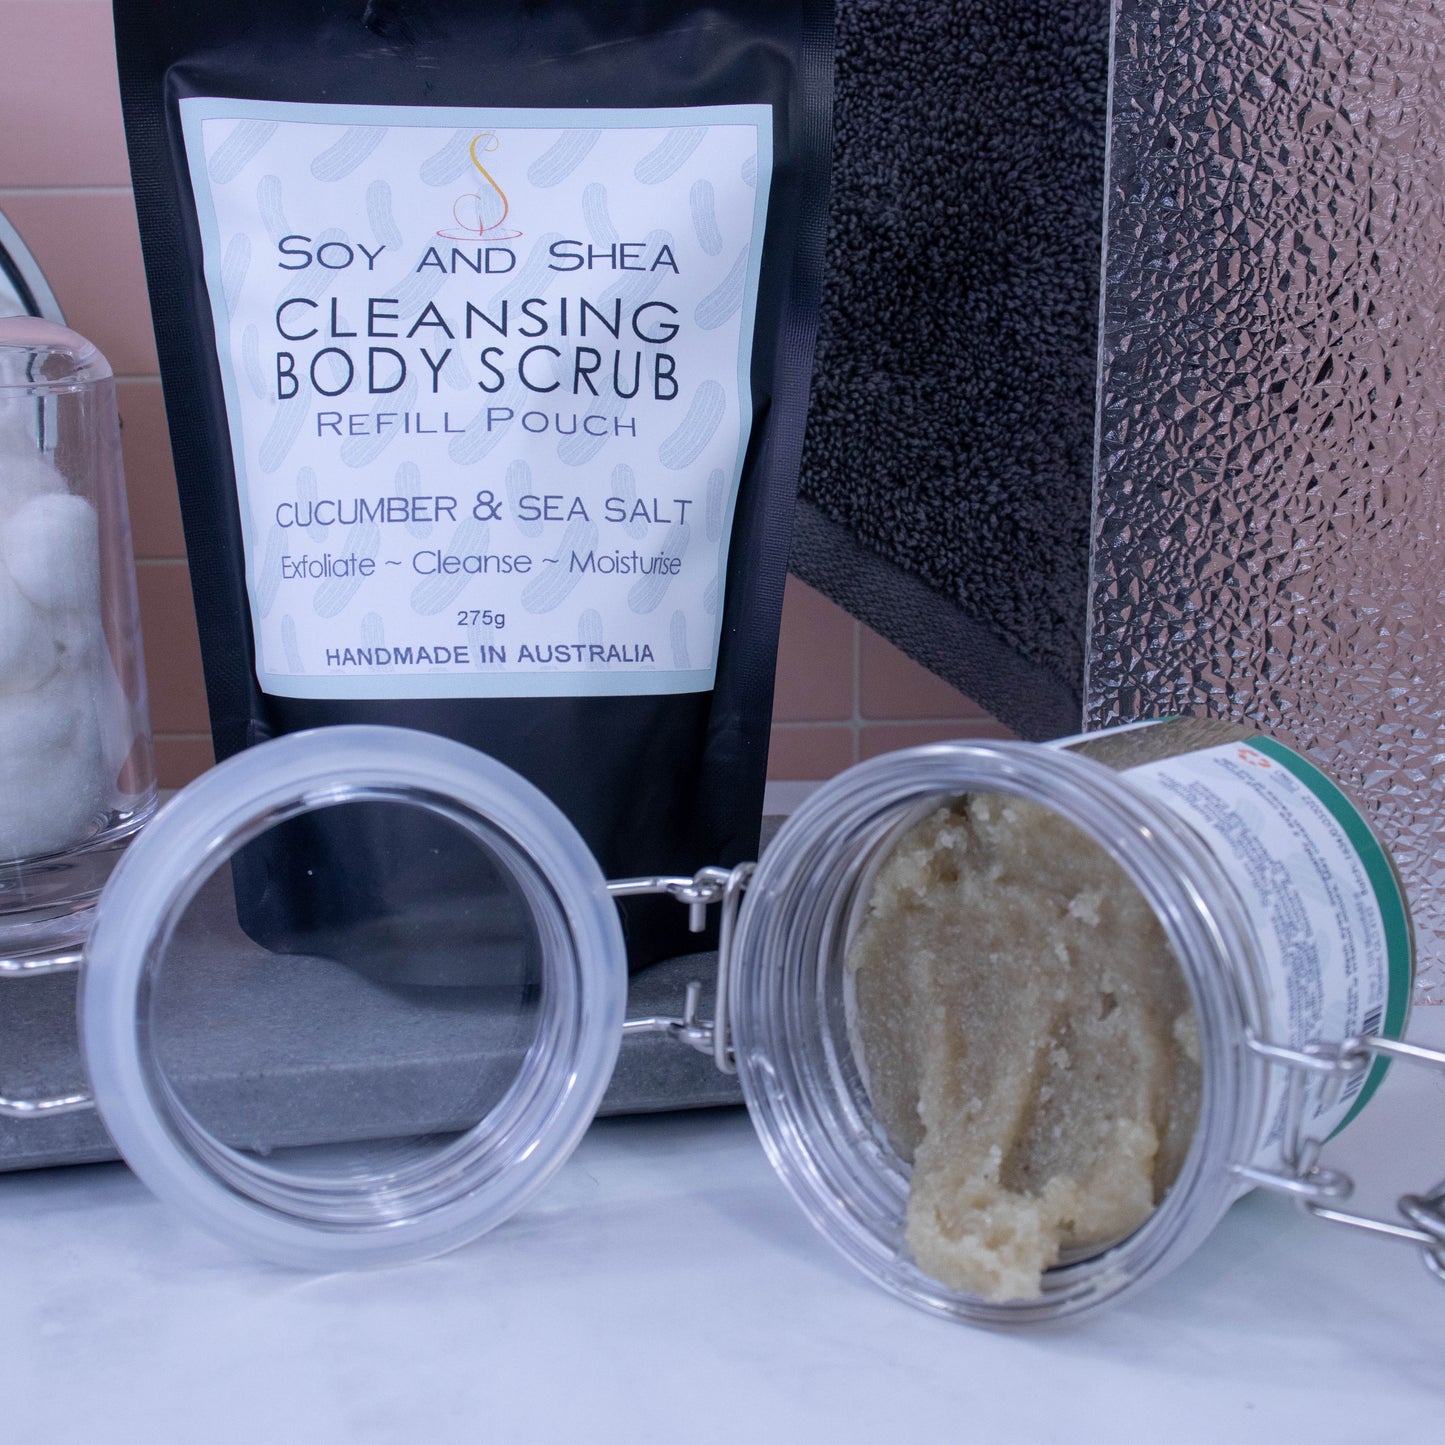 Cucumber & Sea Salt Cleansing Body Scrub